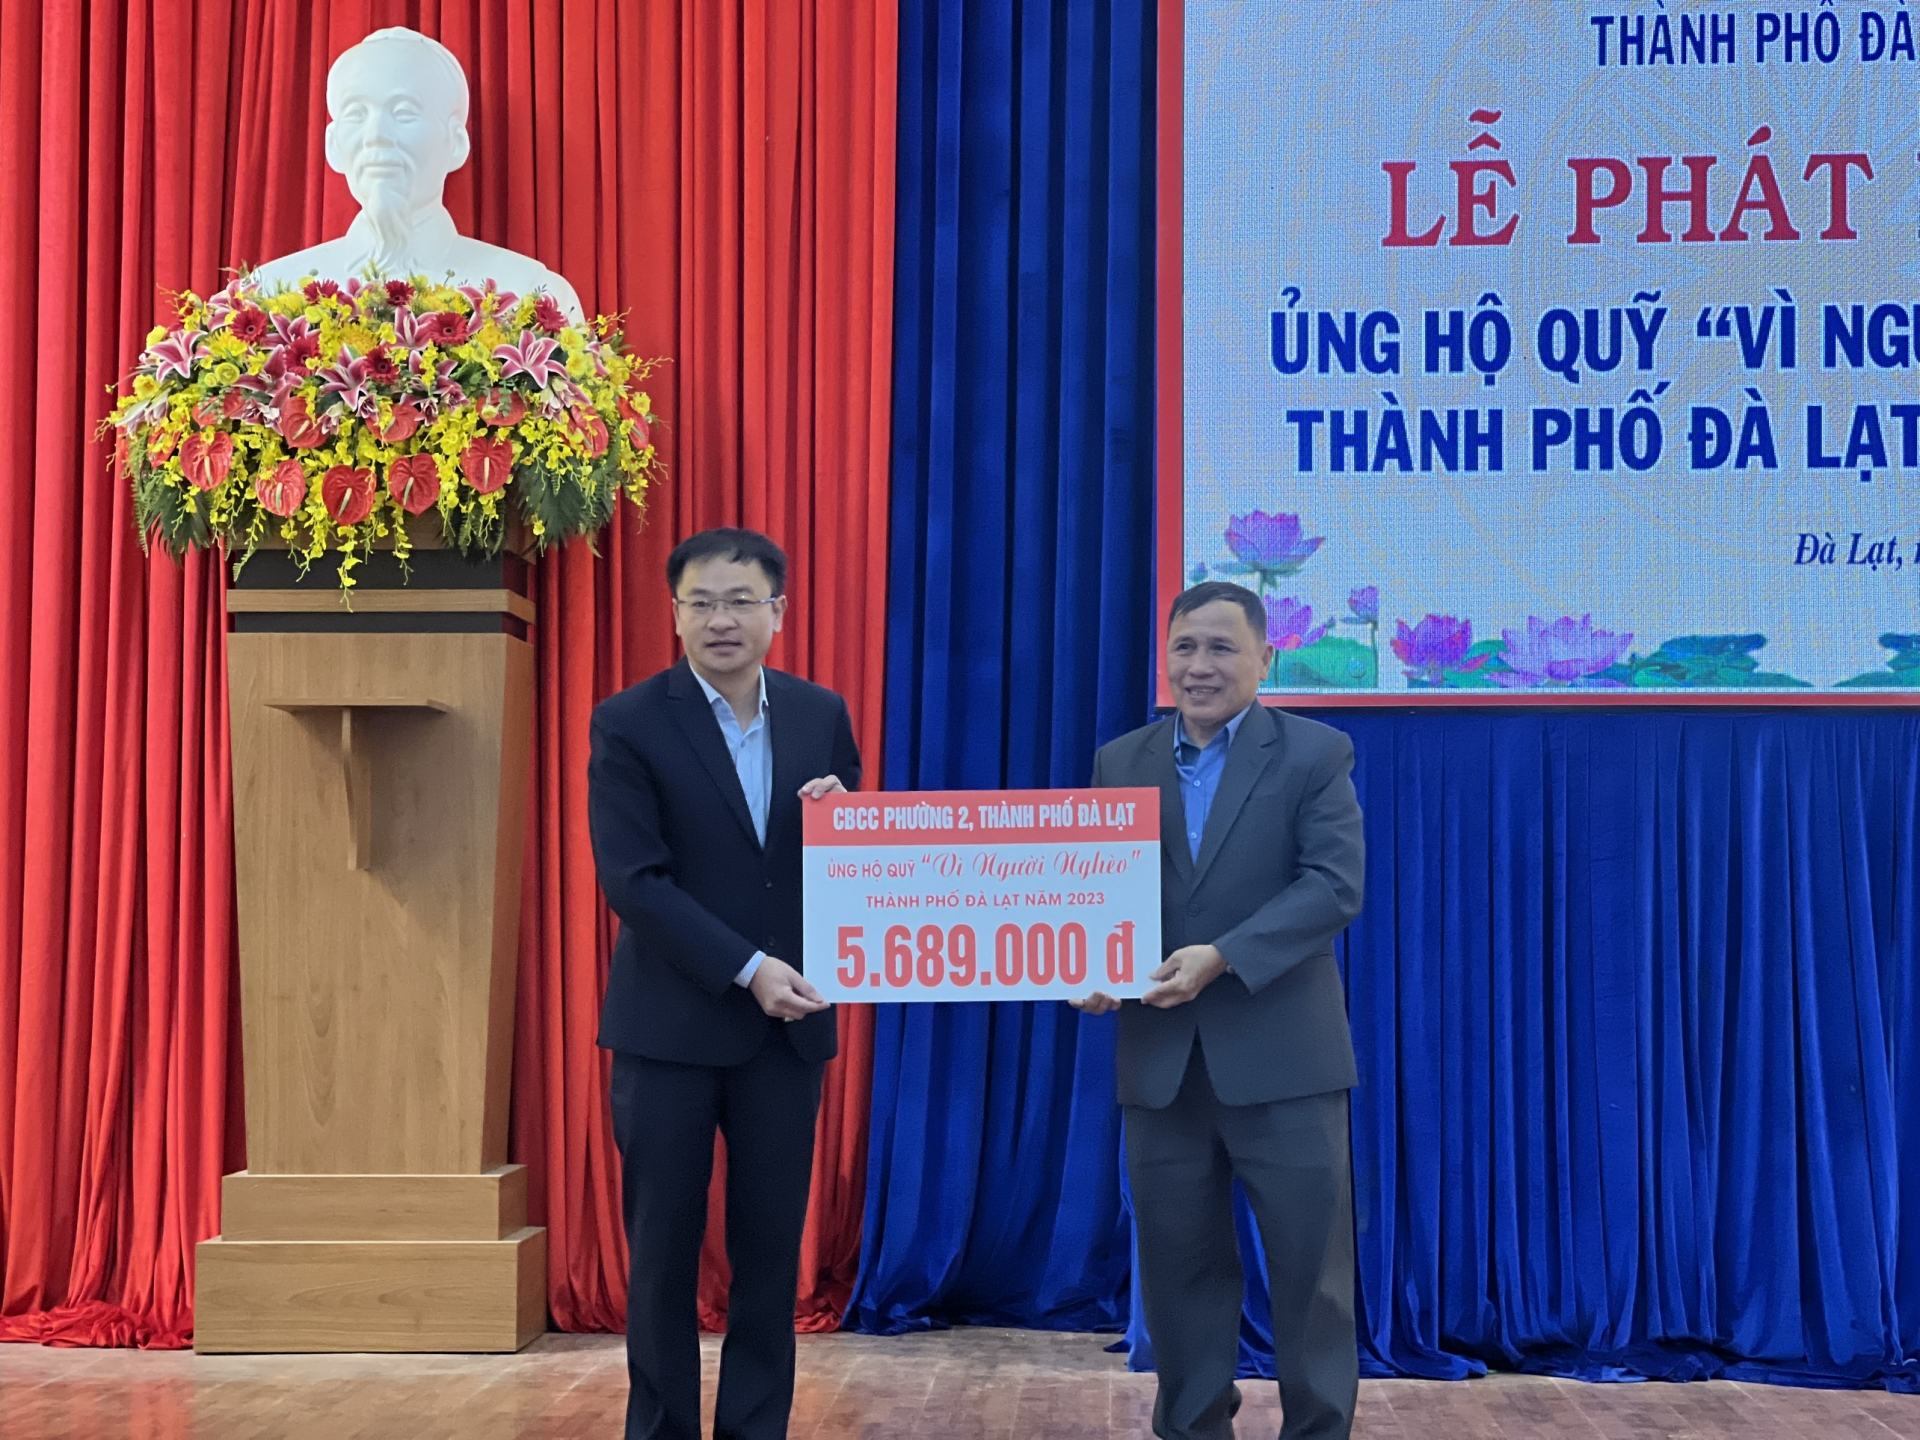 Chủ tịch UBND TP Đà Lạt Đặng Quang Tú tiếp nhận nguồn ủng hộ của các đơn vị, tổ chức, doanh nghiệp vào Quỹ Vì người nghèo